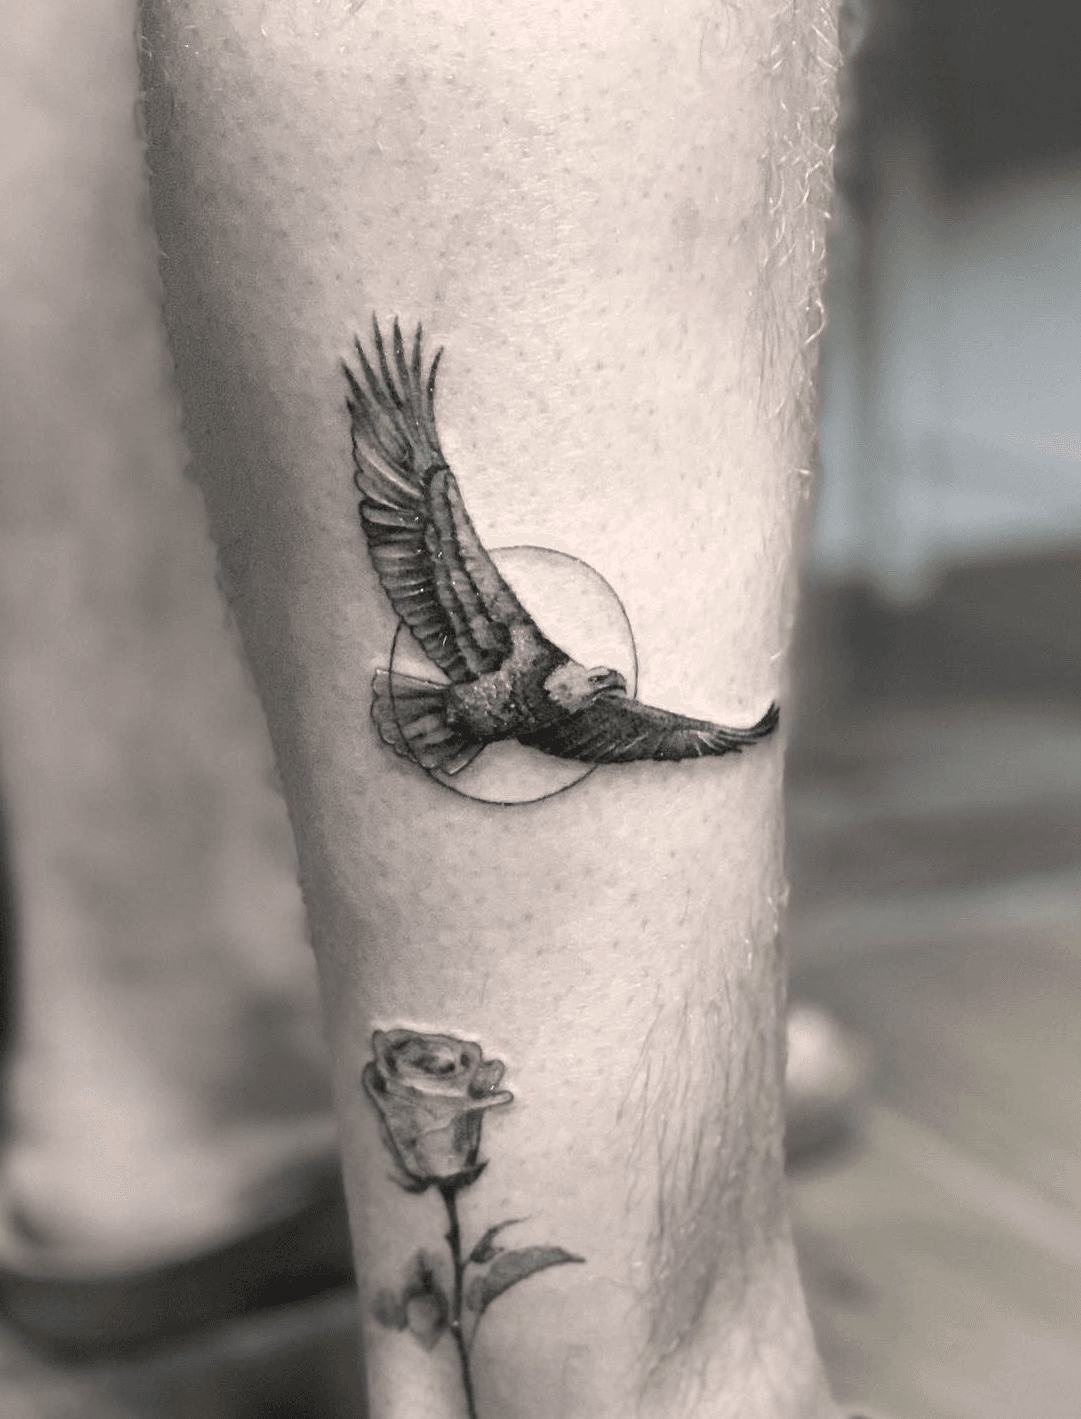 Tattoo Artist Erik  Rayzor TattoosRayzor Tattoos